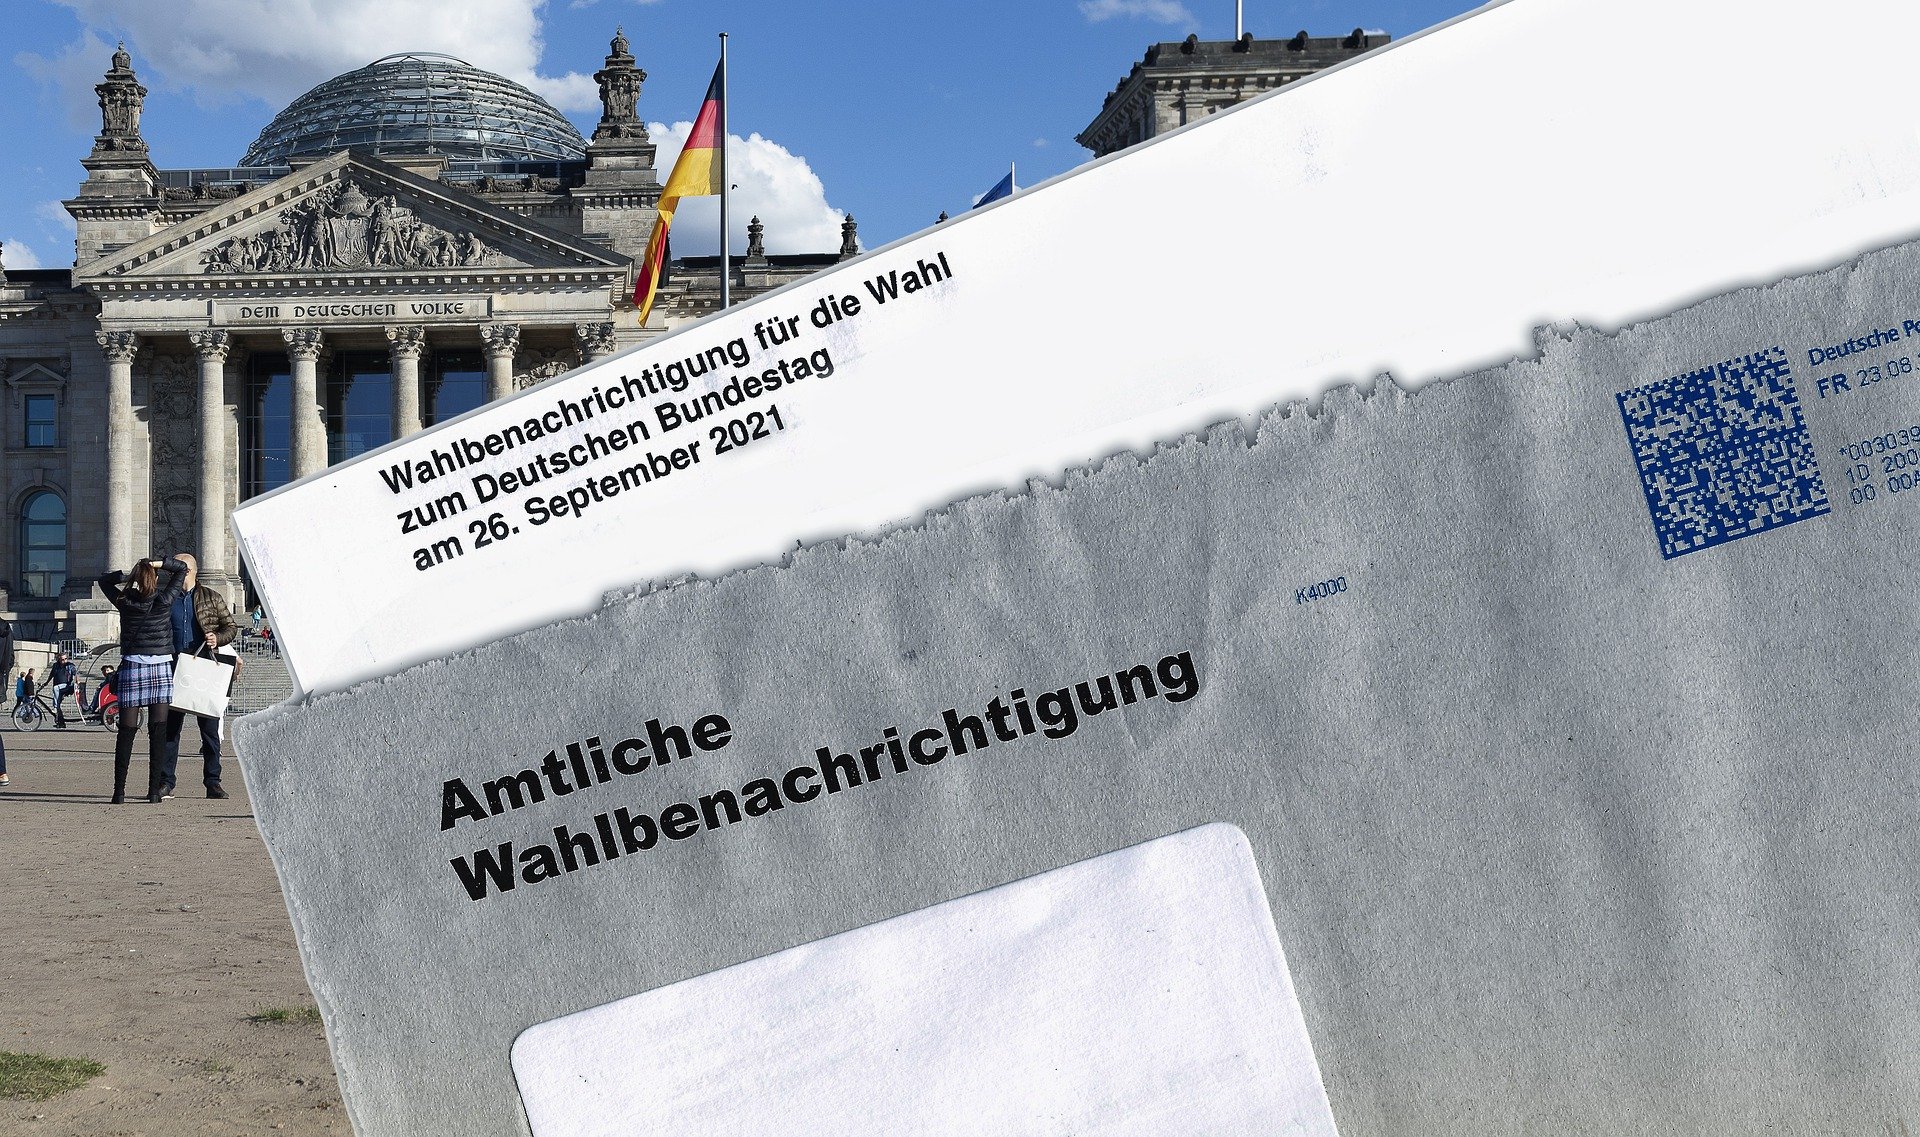 Wahlbetrug in Deutschland: Ein Fünftel rechnet fest mit Unregelmäßigkeiten zur Bundestagswahl